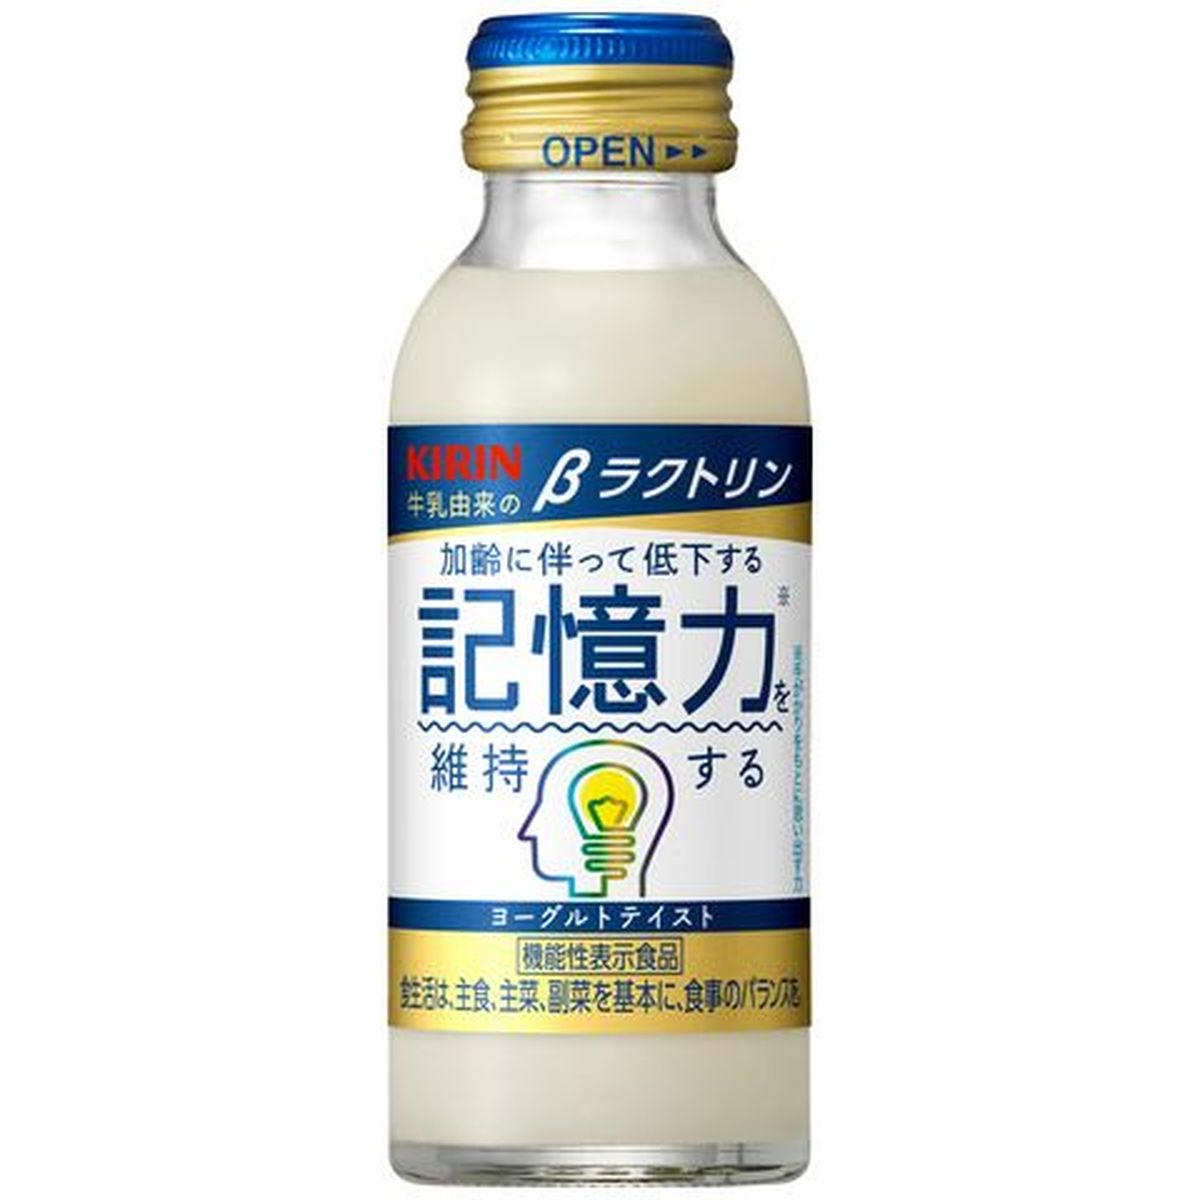 【30個入リ】キリン ベータラクトリン 瓶 100ml